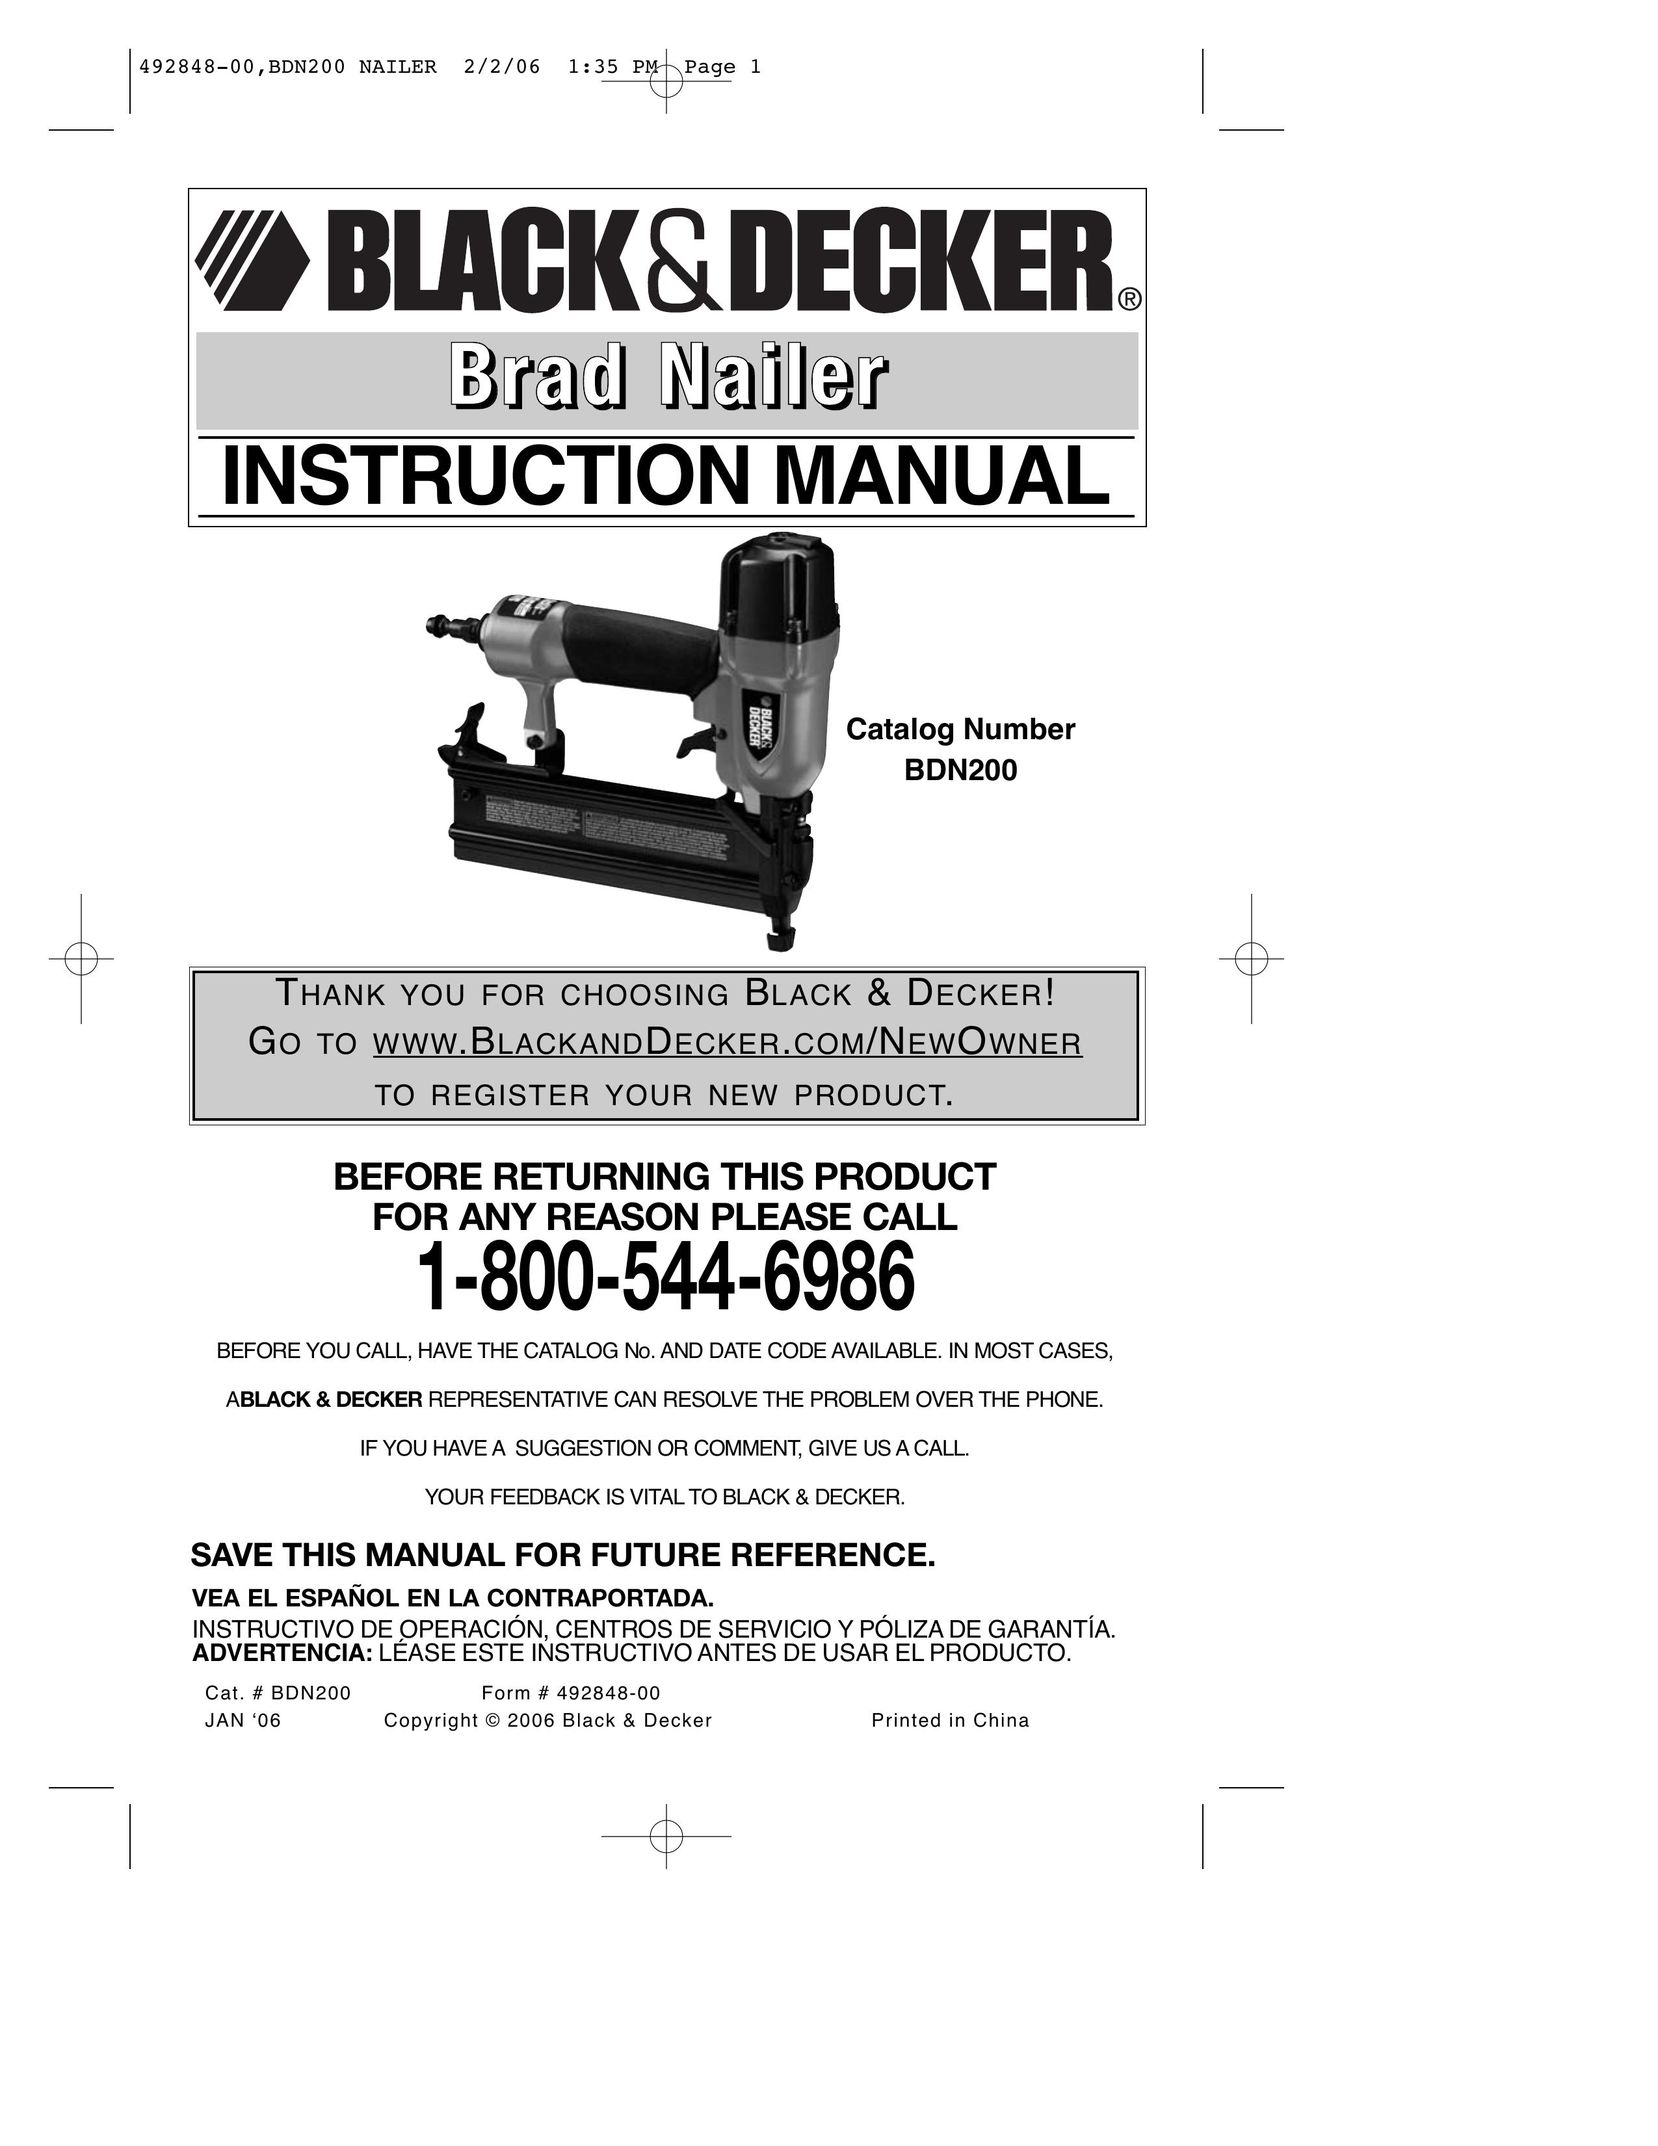 Black & Decker BDN200 Nail Gun User Manual